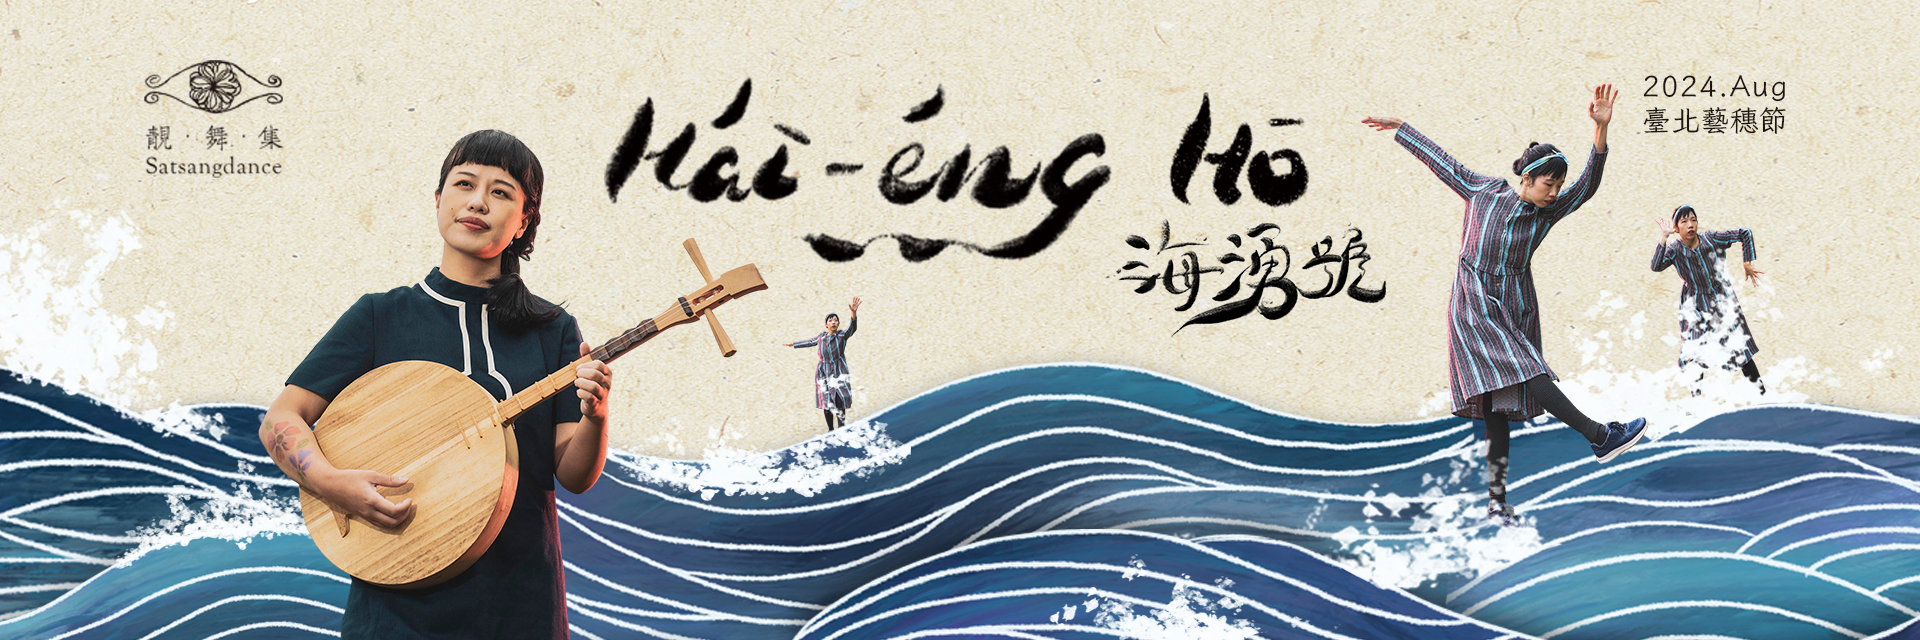 Hái-éng-hō 海湧號 主要圖片